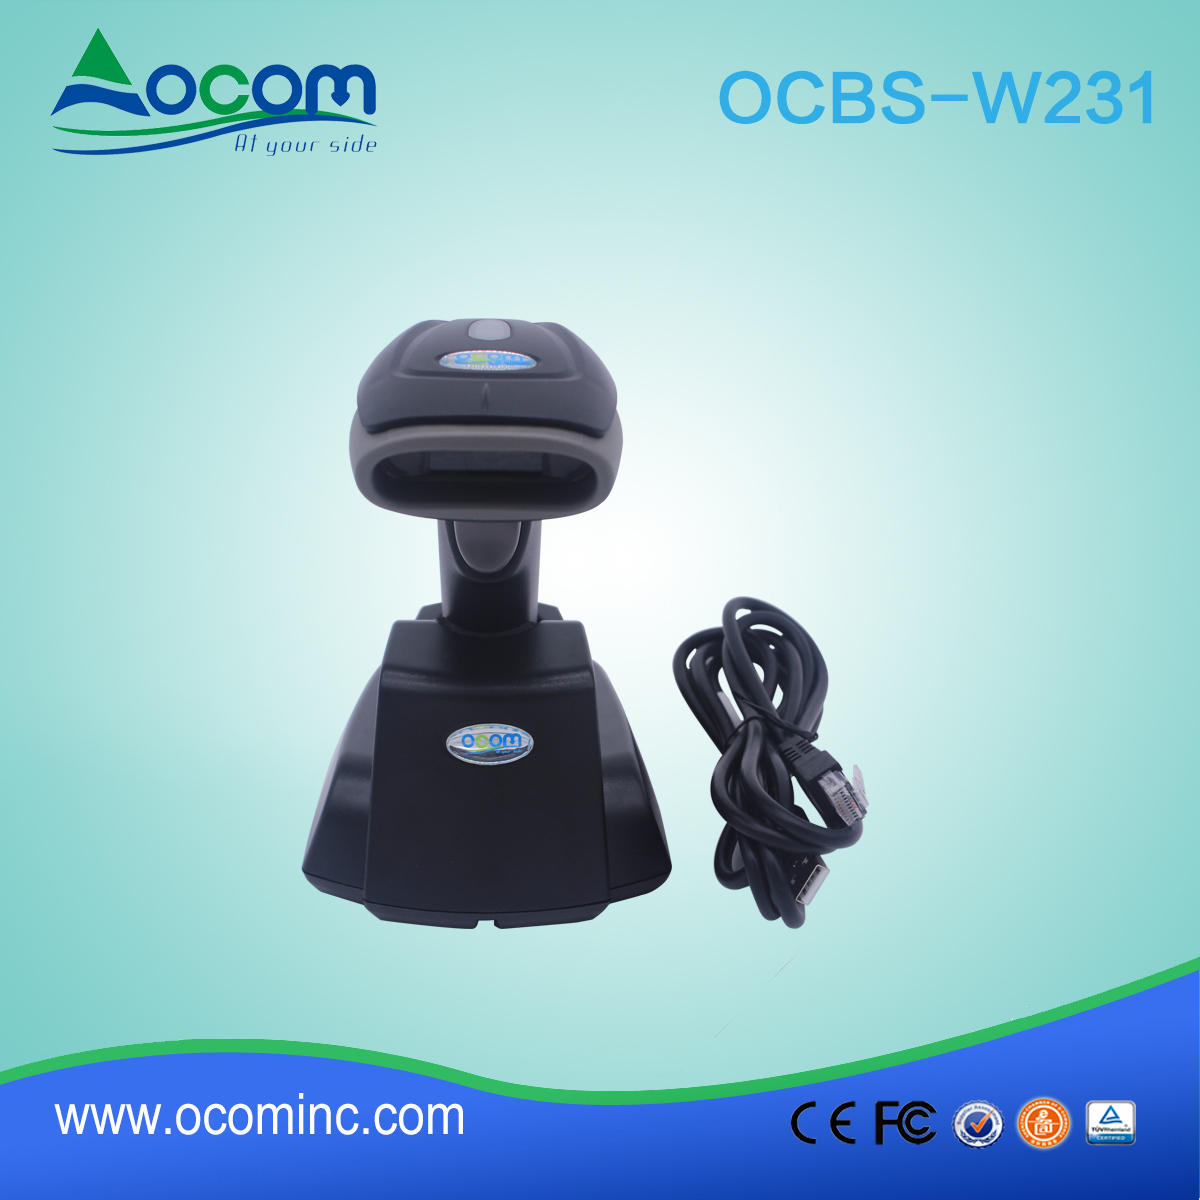 (OCBS-W231) Handheld 433 MHZ Wireless QR código de barras 2D escáner con cuna